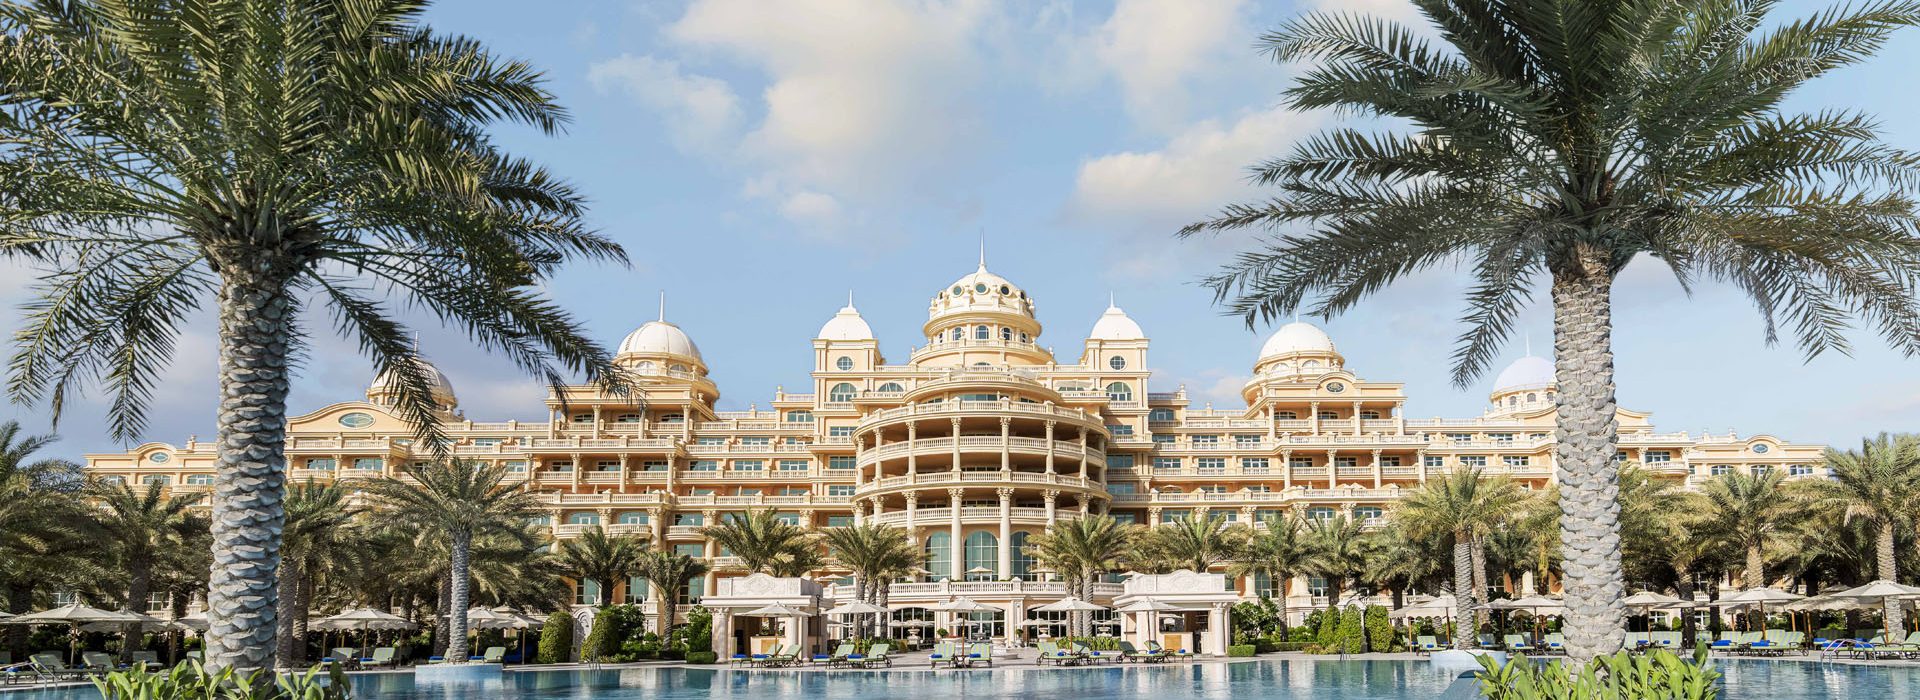 Raffles The Palm Dubai - Accor Holiday Offer